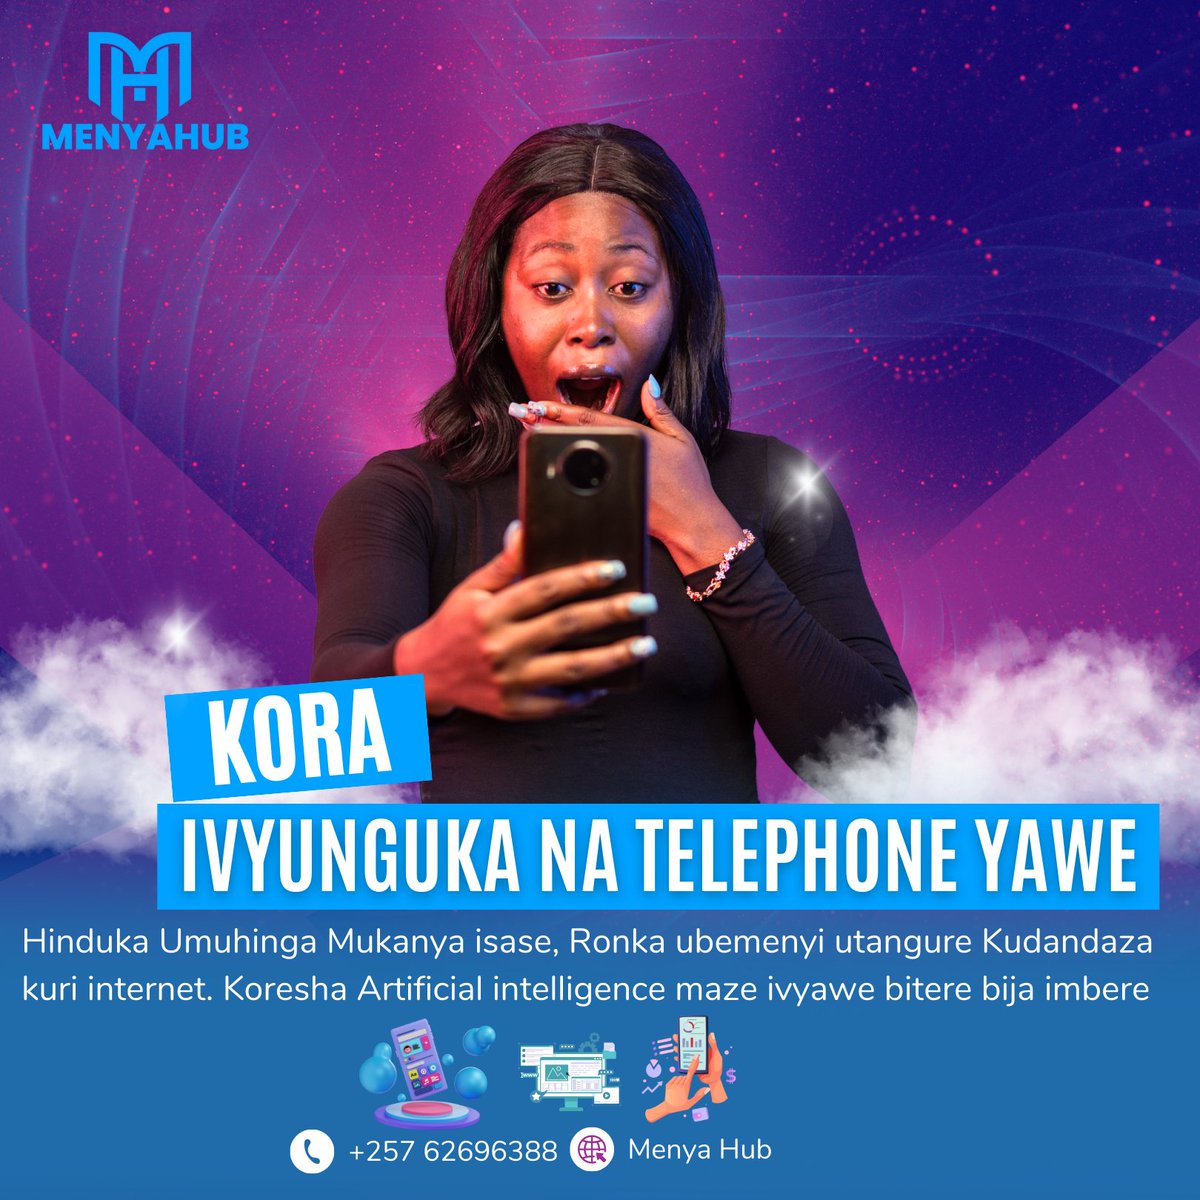 Menya Hub, ushobora kuronka ubumenyi Canke ama services atandukanye Aho woba uri hose kwisi kandi wibuke gukoresha telephone yawe ivyunguka. #menyahub #OnlineBusiness #onlinecourses